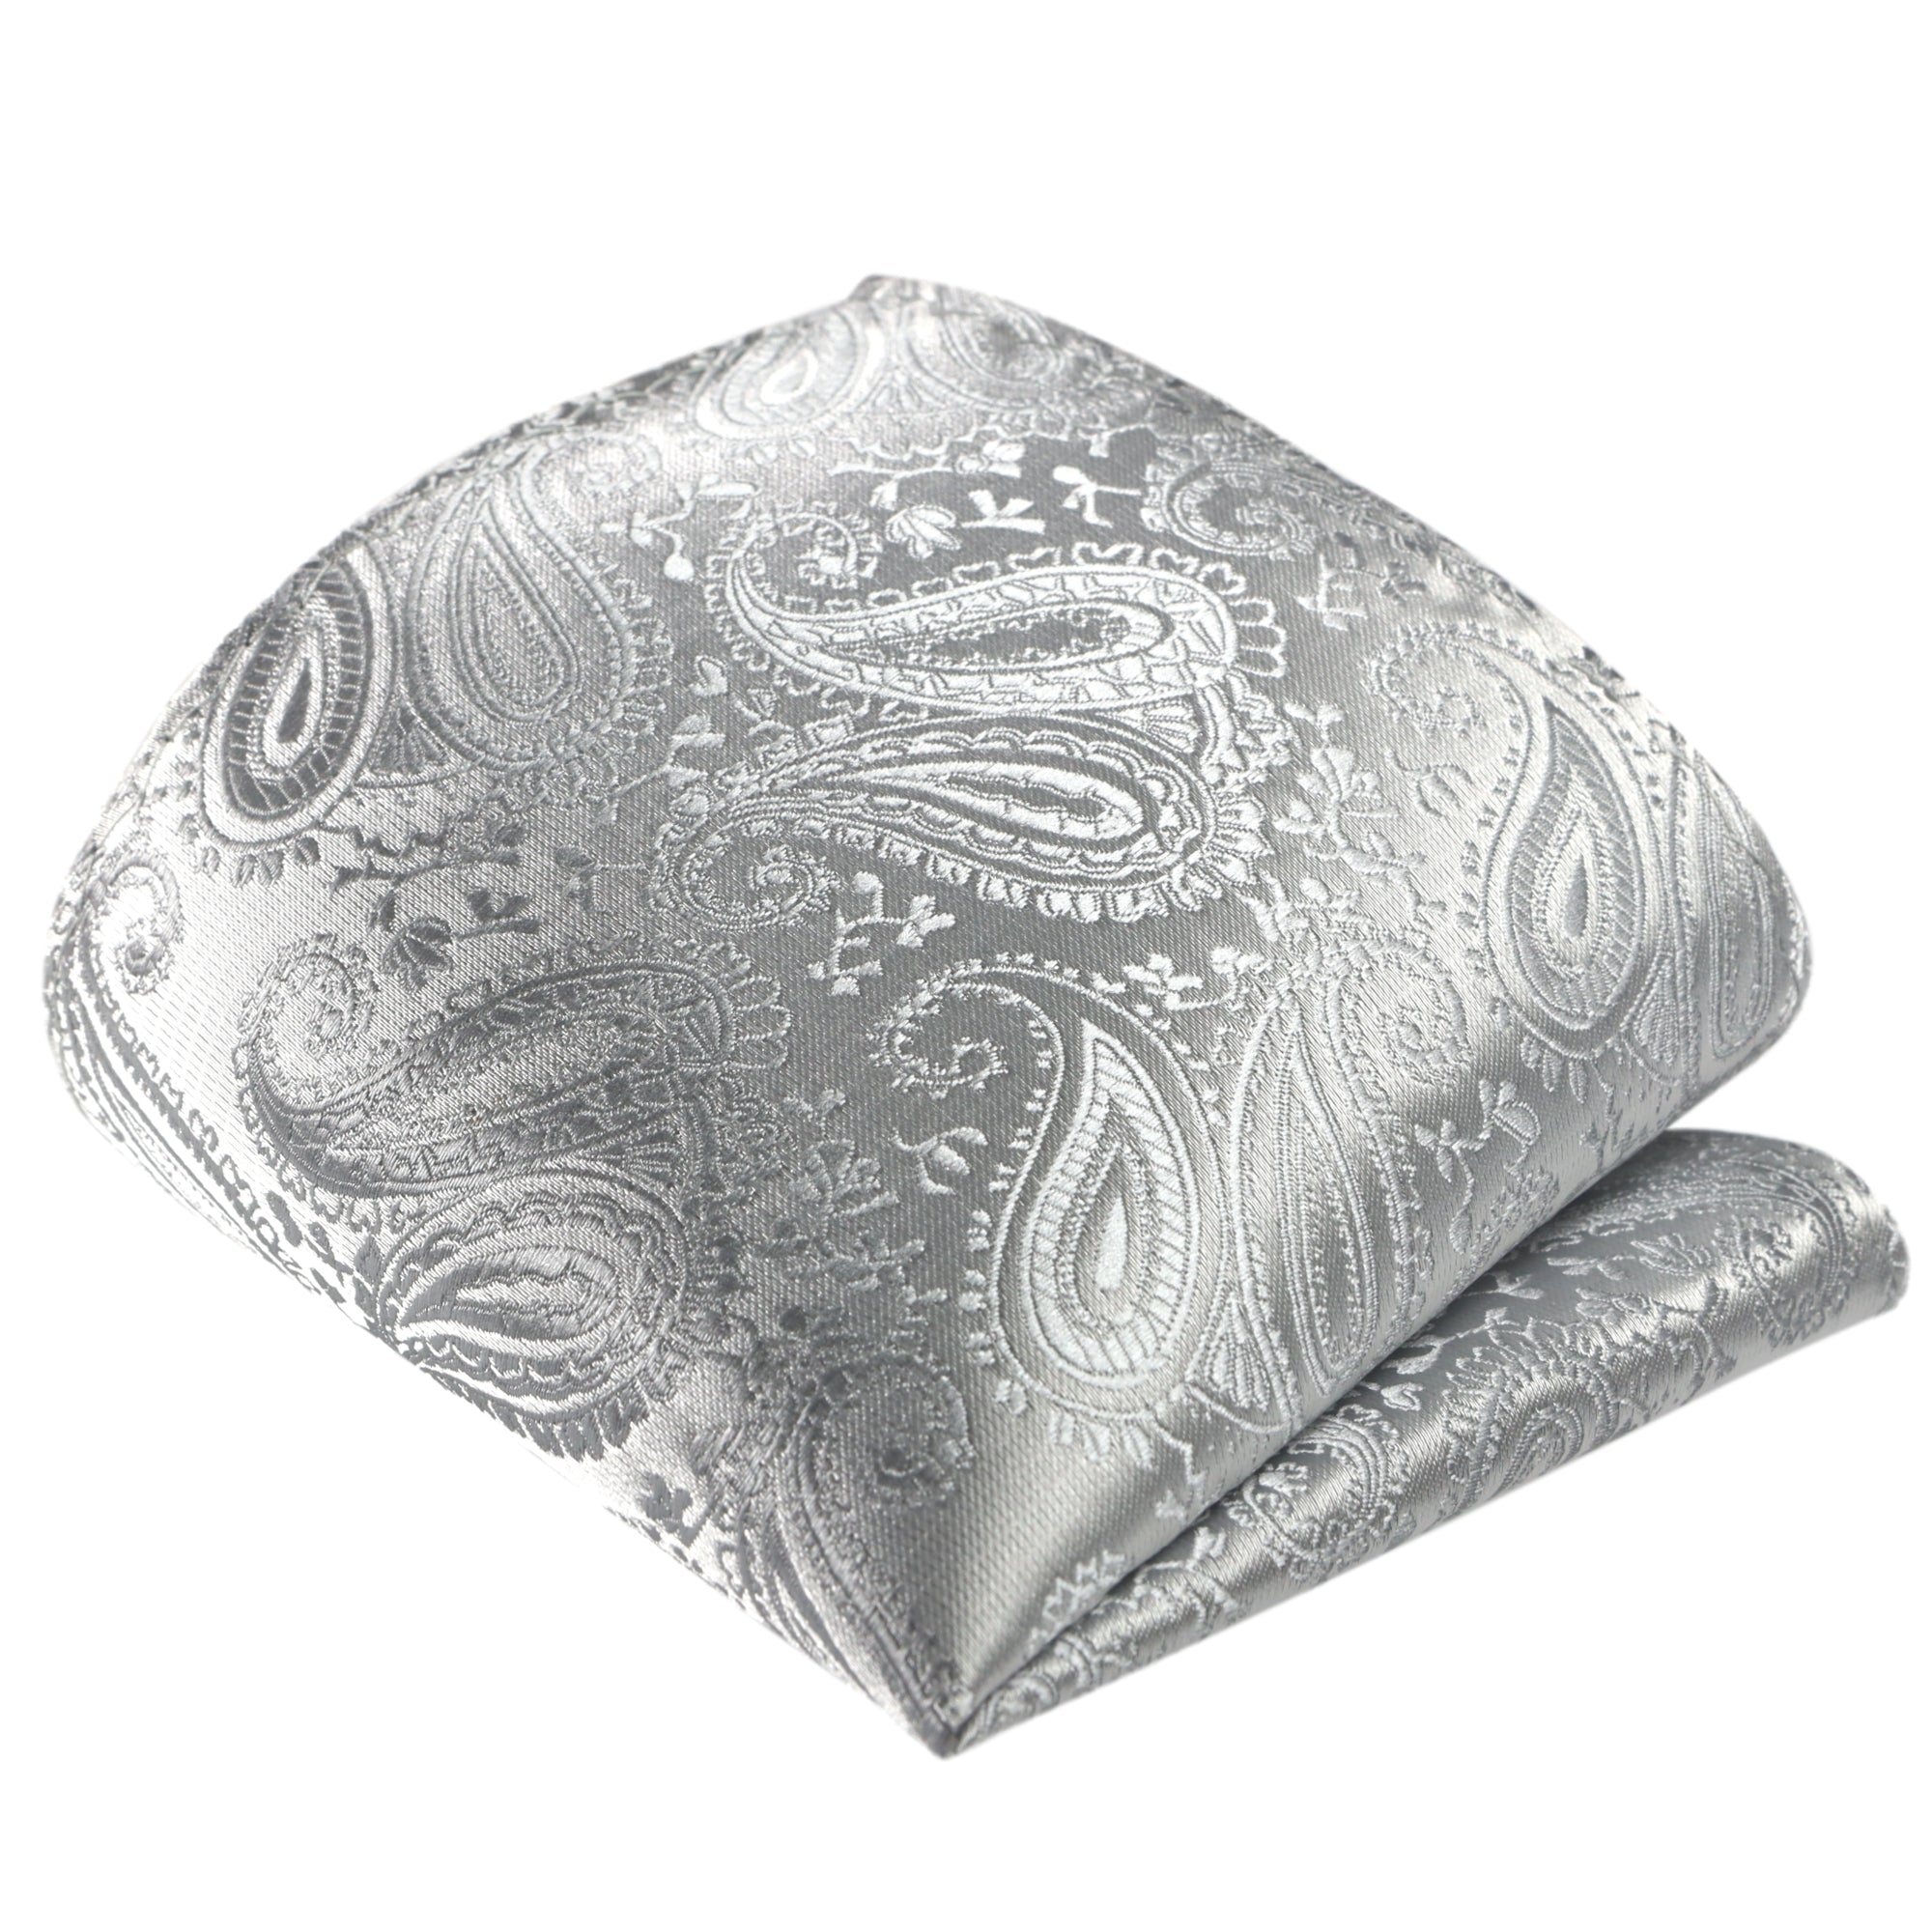 Kaufen Sie Silber-Graue Paisley-Krawatte | Designt für GASSANIshop.de -  GASSANI Krawatten